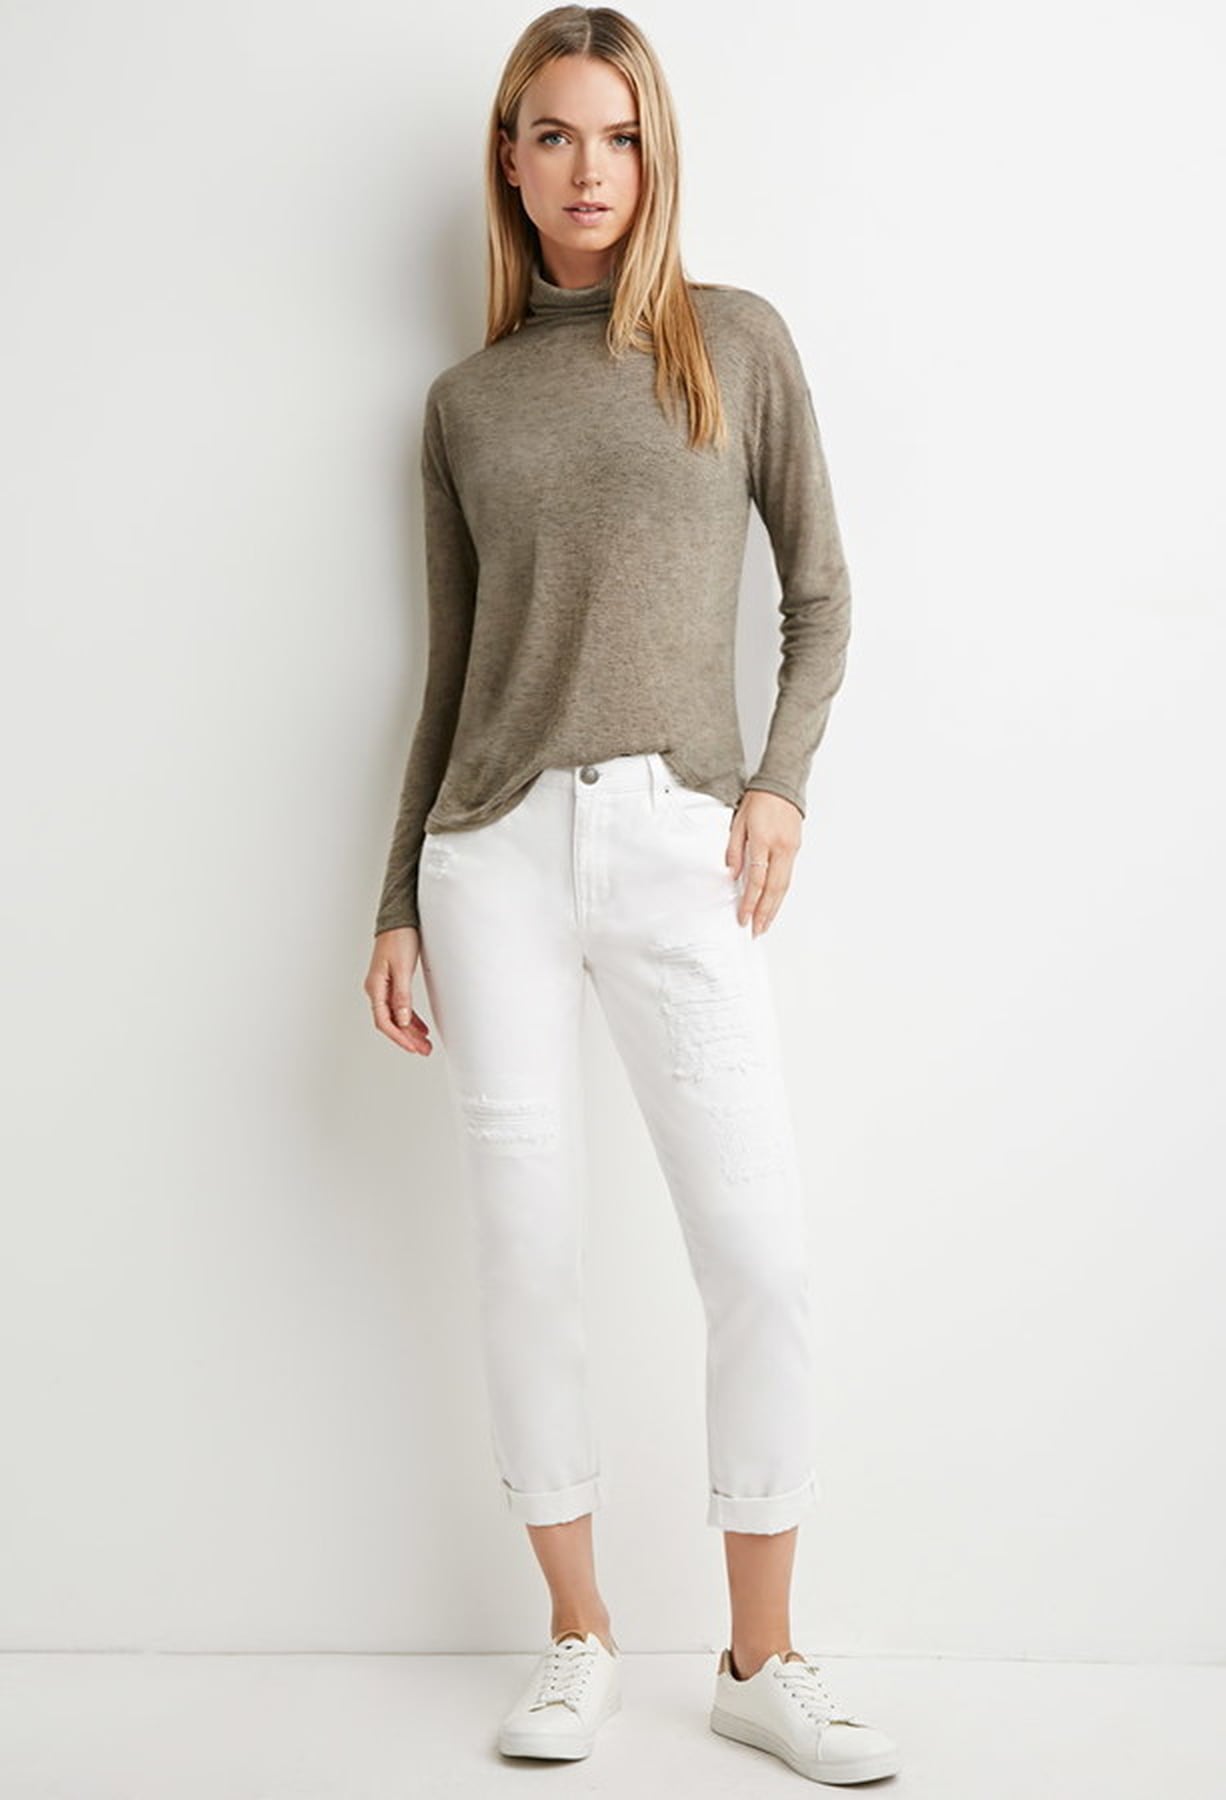 Best White Jeans | POPSUGAR Fashion